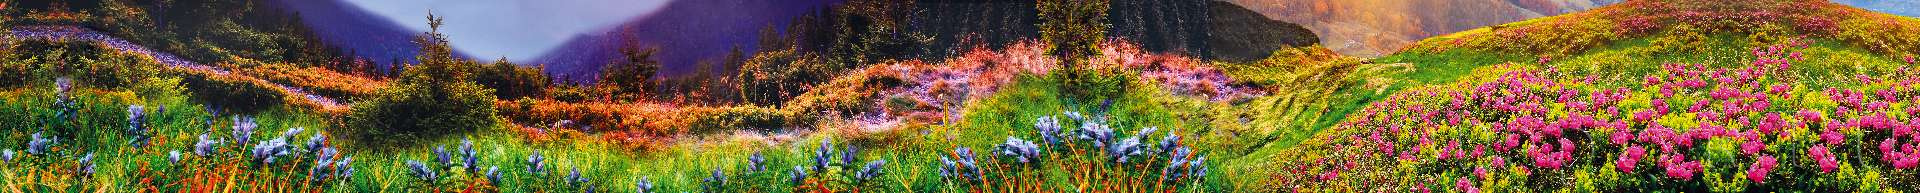 Цветочная поляна в горах